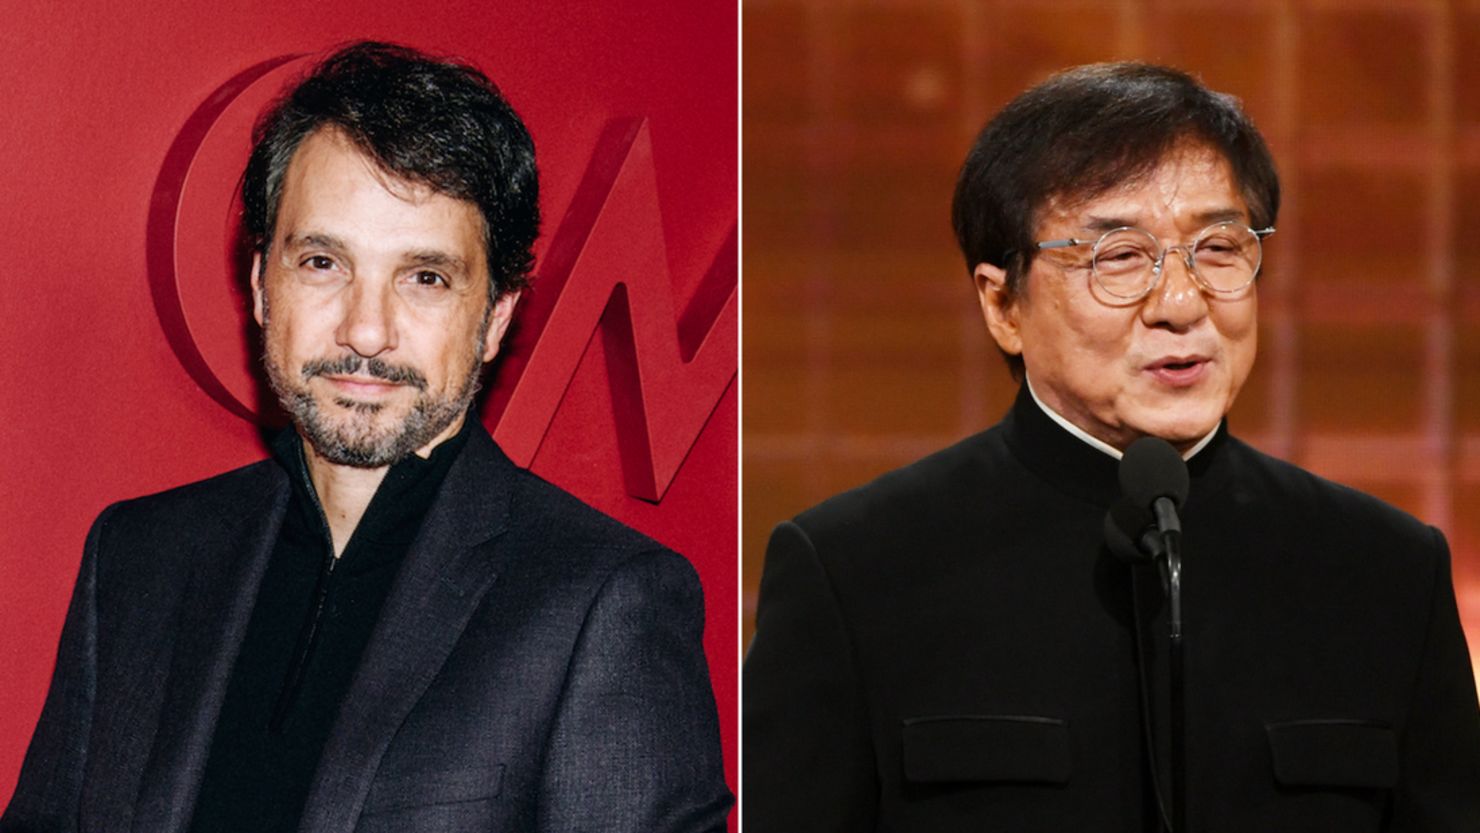 Com Jackie Chan, novo filme de 'Karate Kid' ganha data de estreia